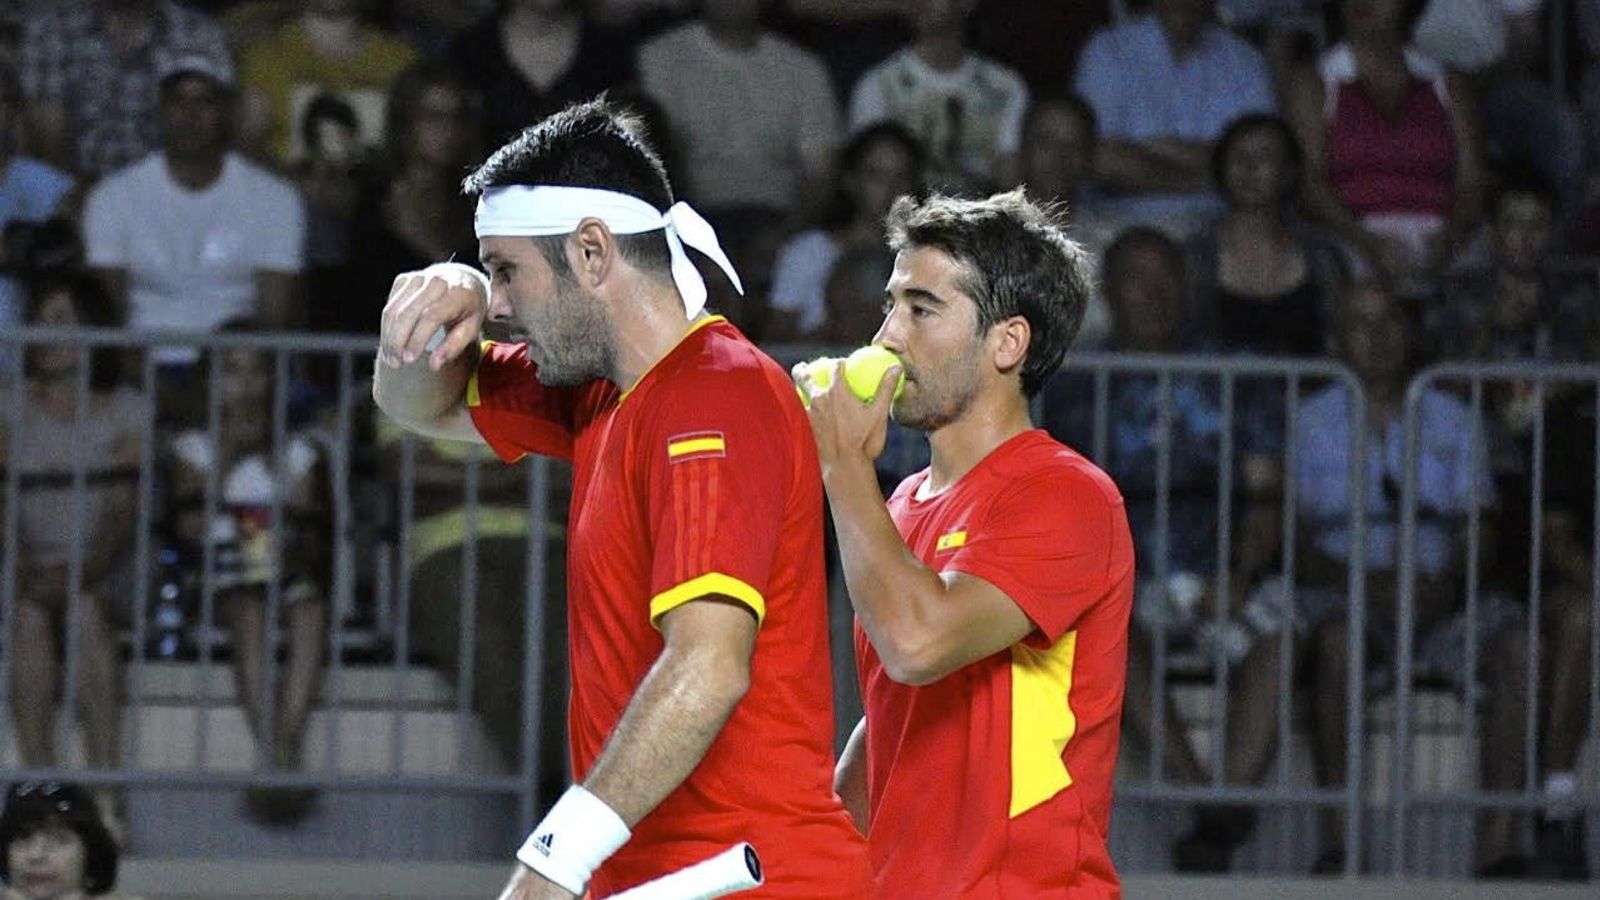 Foto: Marc López y David Marrero jugaron su segundo partido juntos en Copa Davis (Efe)